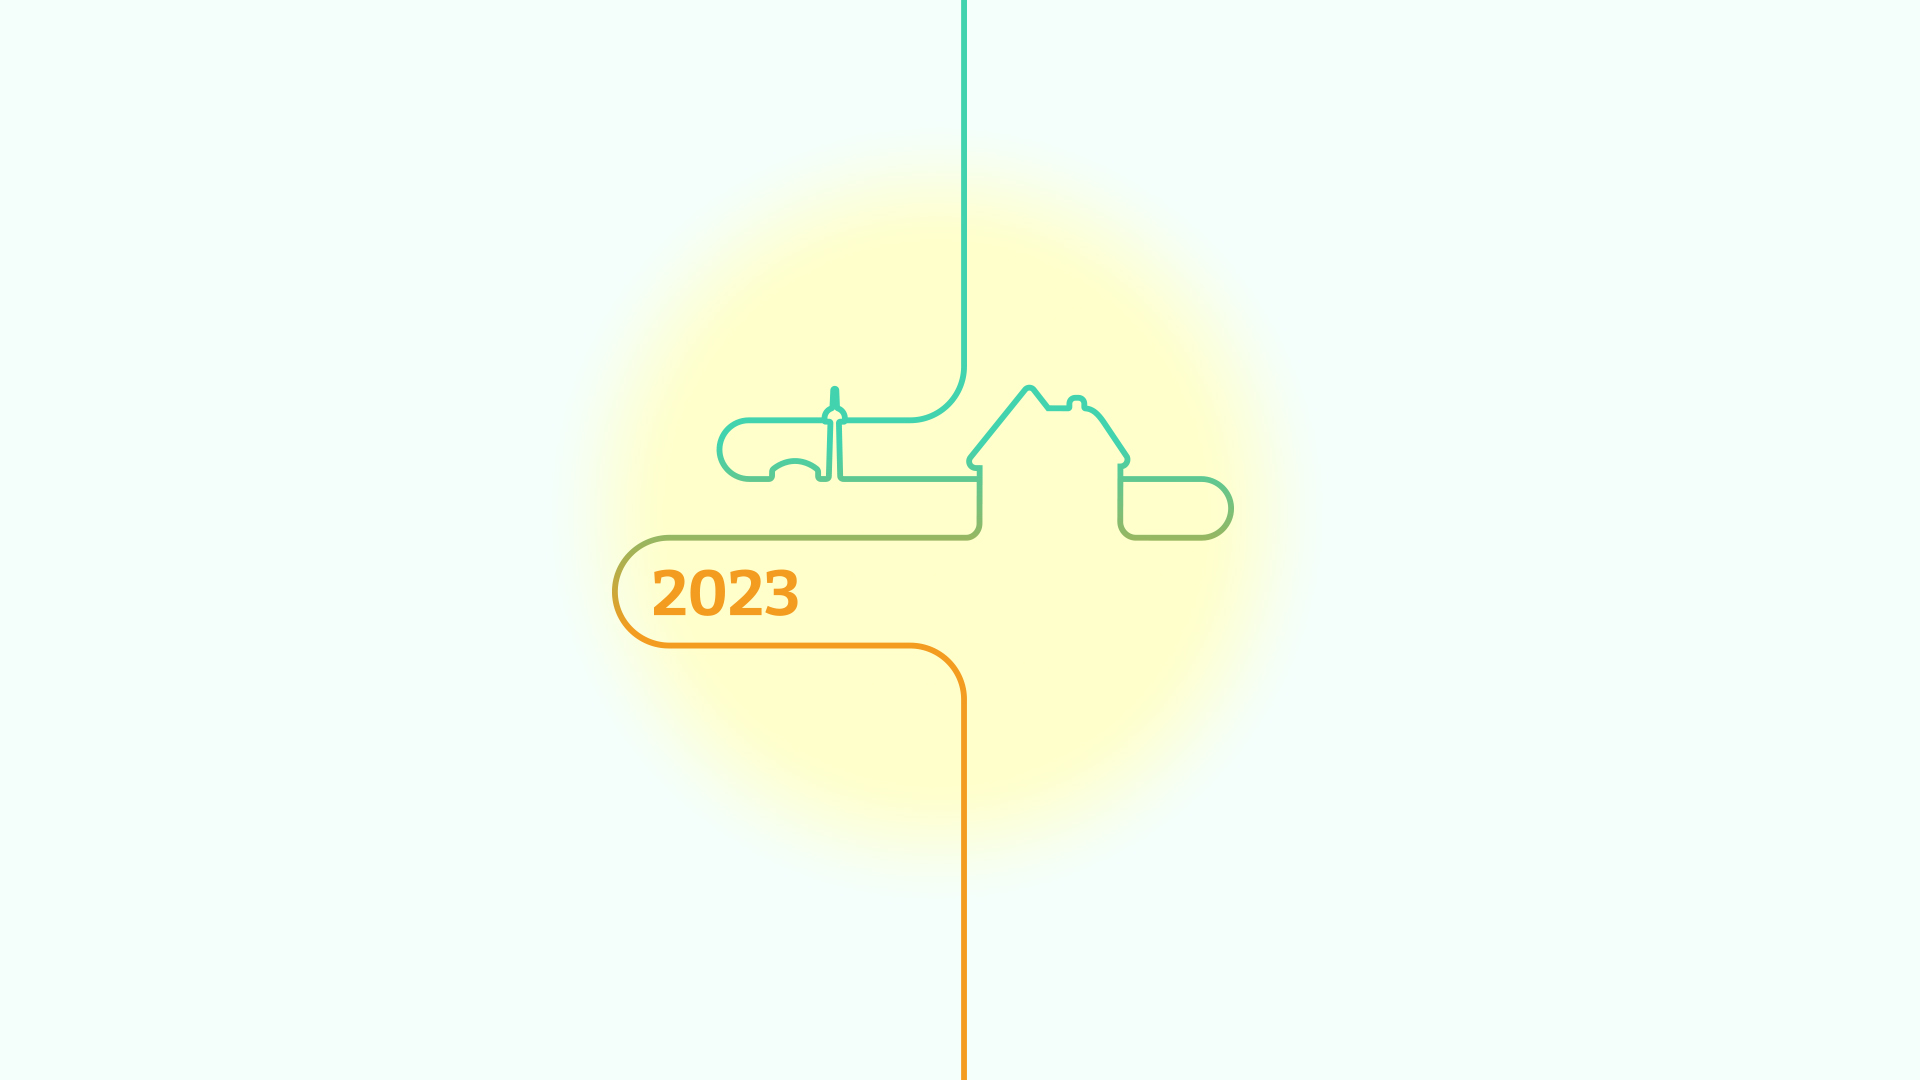 Présentation de la petite icône qui suit l’utilisateur depuis son premier choix jusqu'à la présentation de ses résultats. Cette icône représente les choix du lecteur dessinés grâce au fil conducteur. Ici, l’illustration représente la tour CN en arrière plan, une maison individuelle en second plan, et l’année 2023 en premier plan. L’icône est placée dans un cercle jaune pâle dans lequel il ressort visuellement. Le tout est présenté sur fond bleu pâle.